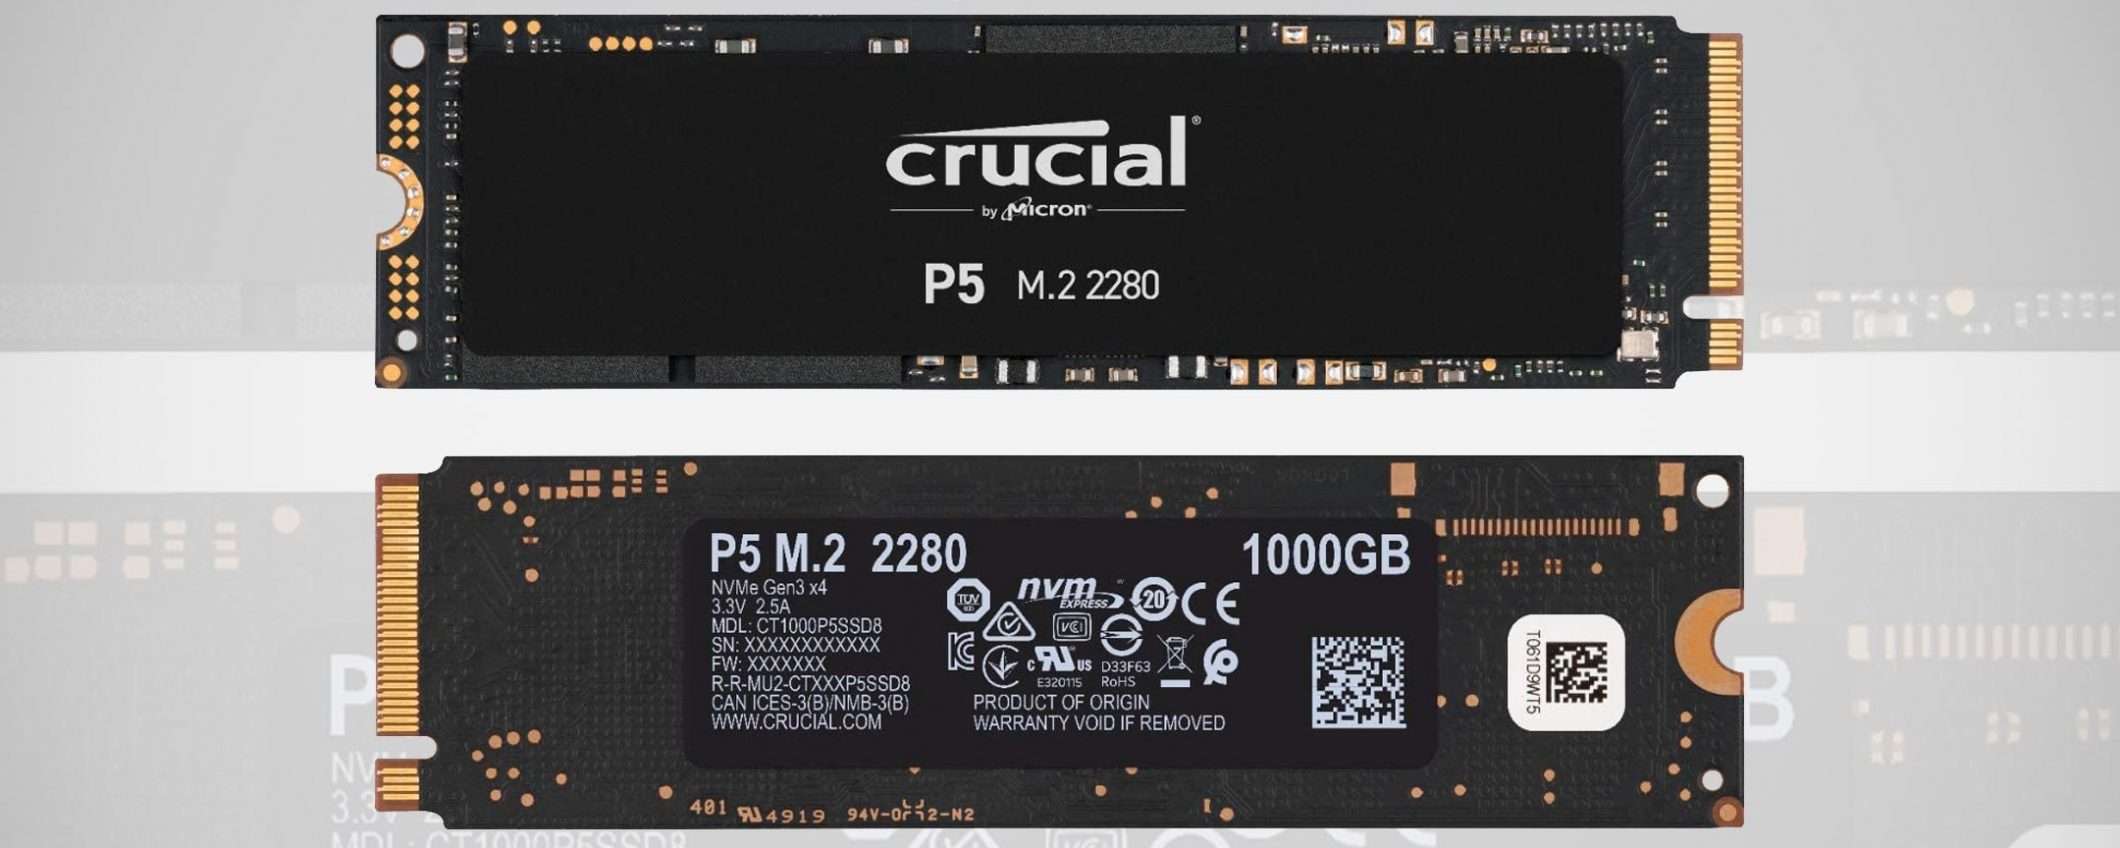 Prime Day: Crucial P5, SSD PCIe da 1 TB a -21%